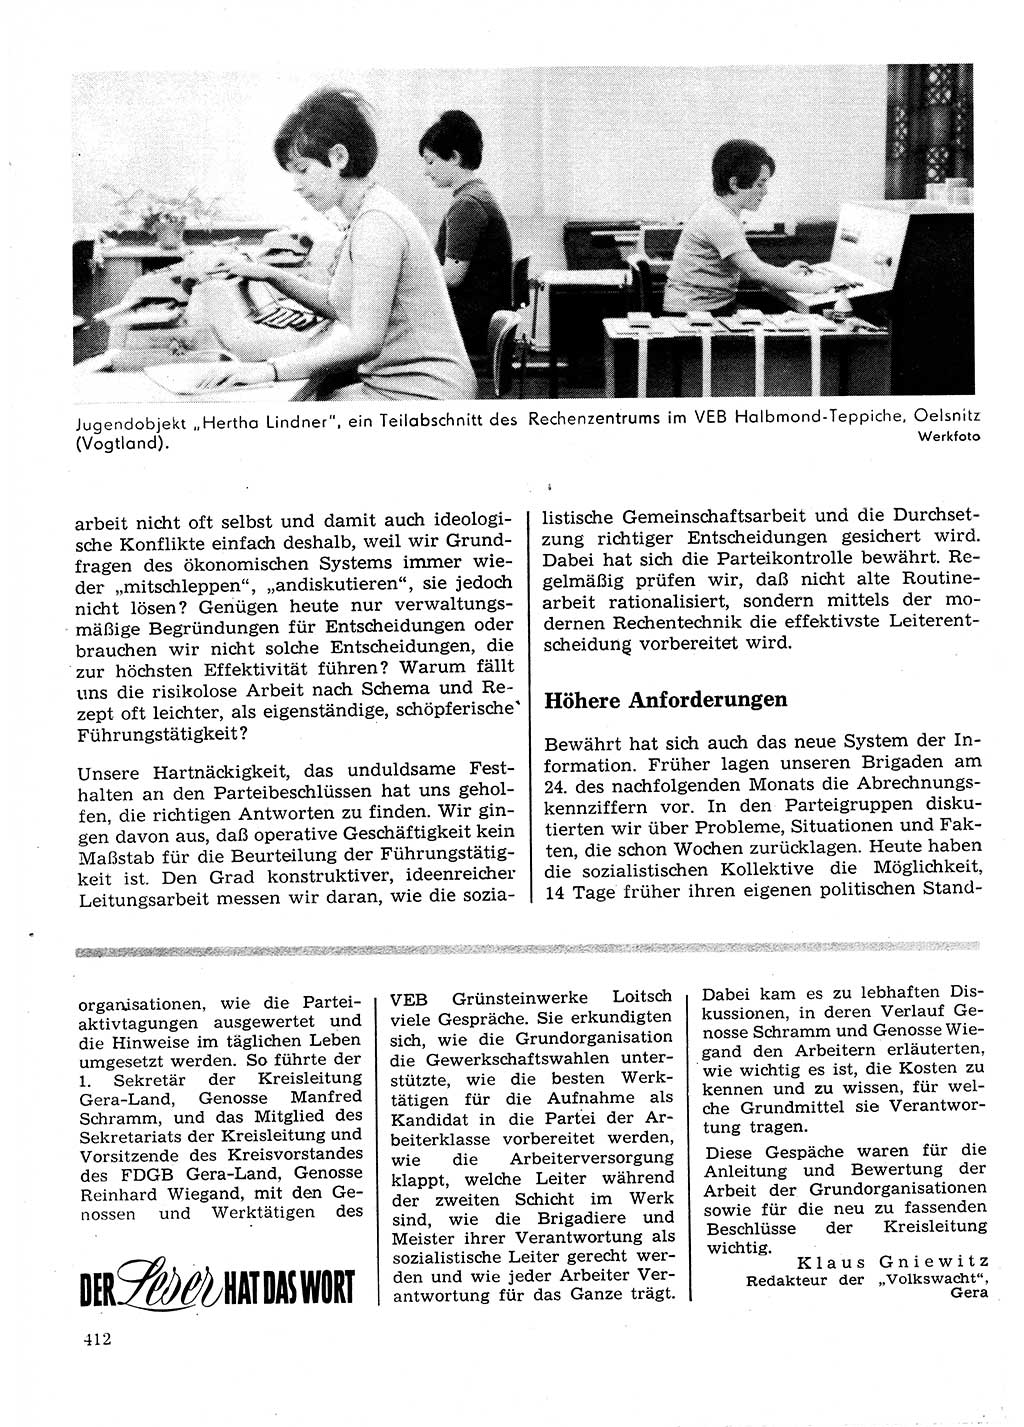 Neuer Weg (NW), Organ des Zentralkomitees (ZK) der SED (Sozialistische Einheitspartei Deutschlands) für Fragen des Parteilebens, 25. Jahrgang [Deutsche Demokratische Republik (DDR)] 1970, Seite 412 (NW ZK SED DDR 1970, S. 412)